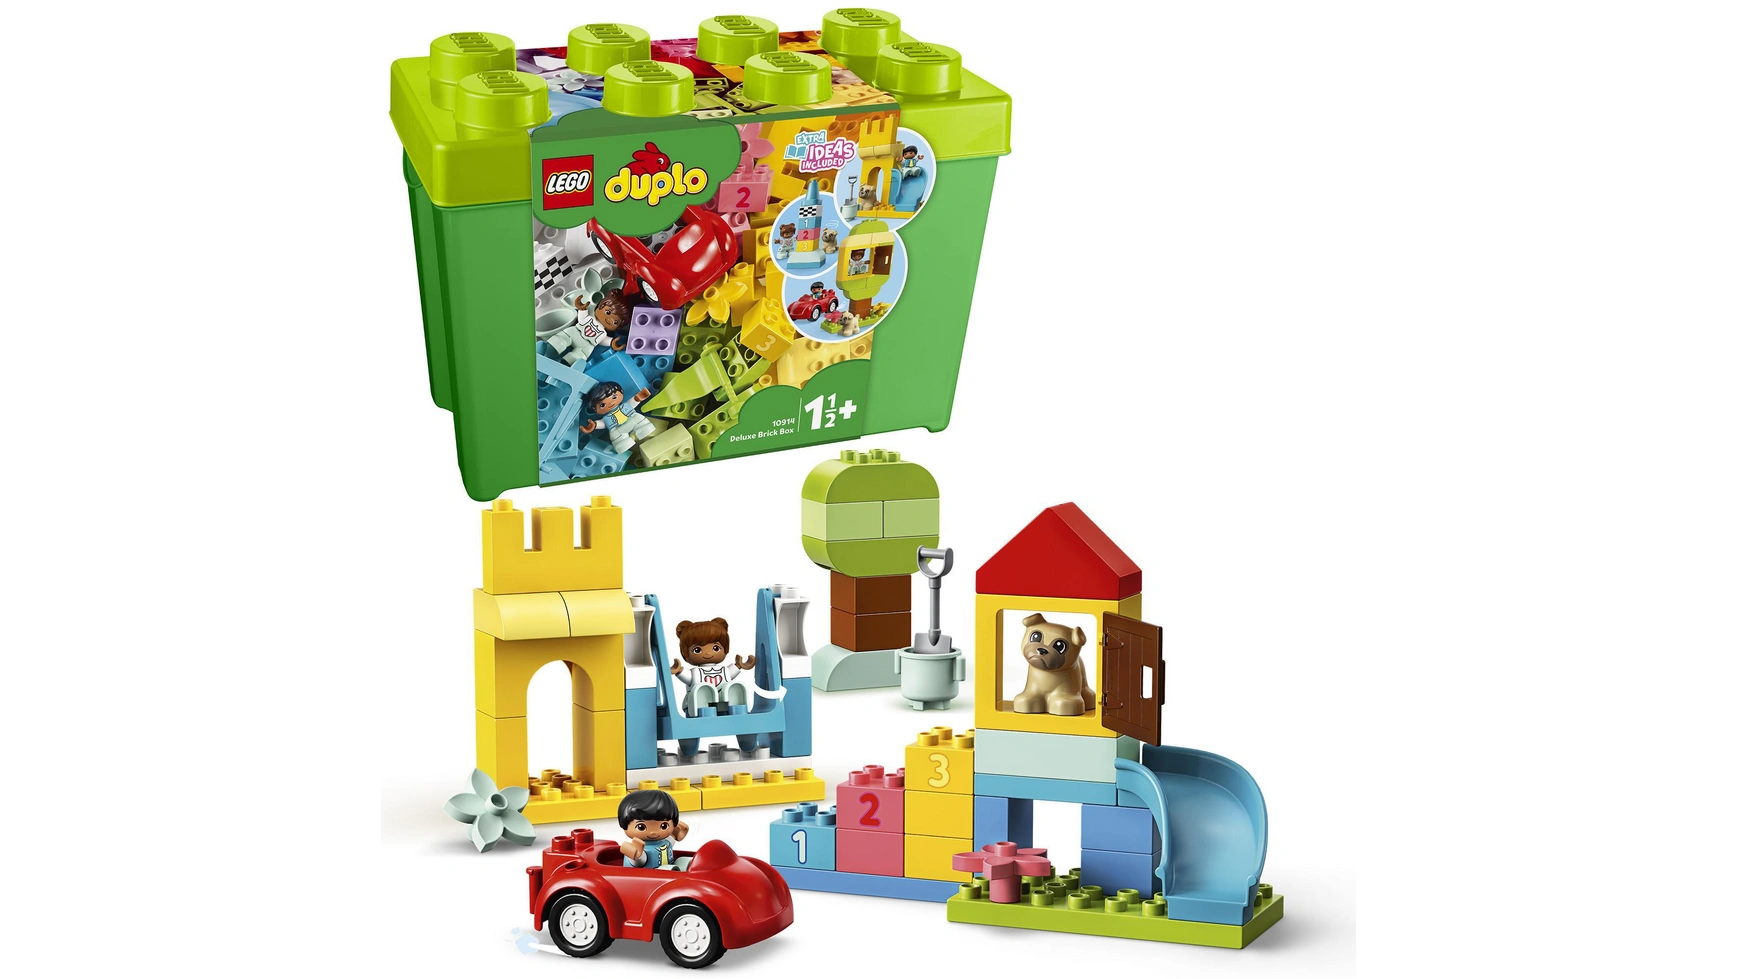 Lego DUPLO Роскошная кирпичная коробка, обучающая игрушка для детей от 1,5 лет lego duplo classic кирпичная коробка креативная шкатулка игрушка от 1 5 лет